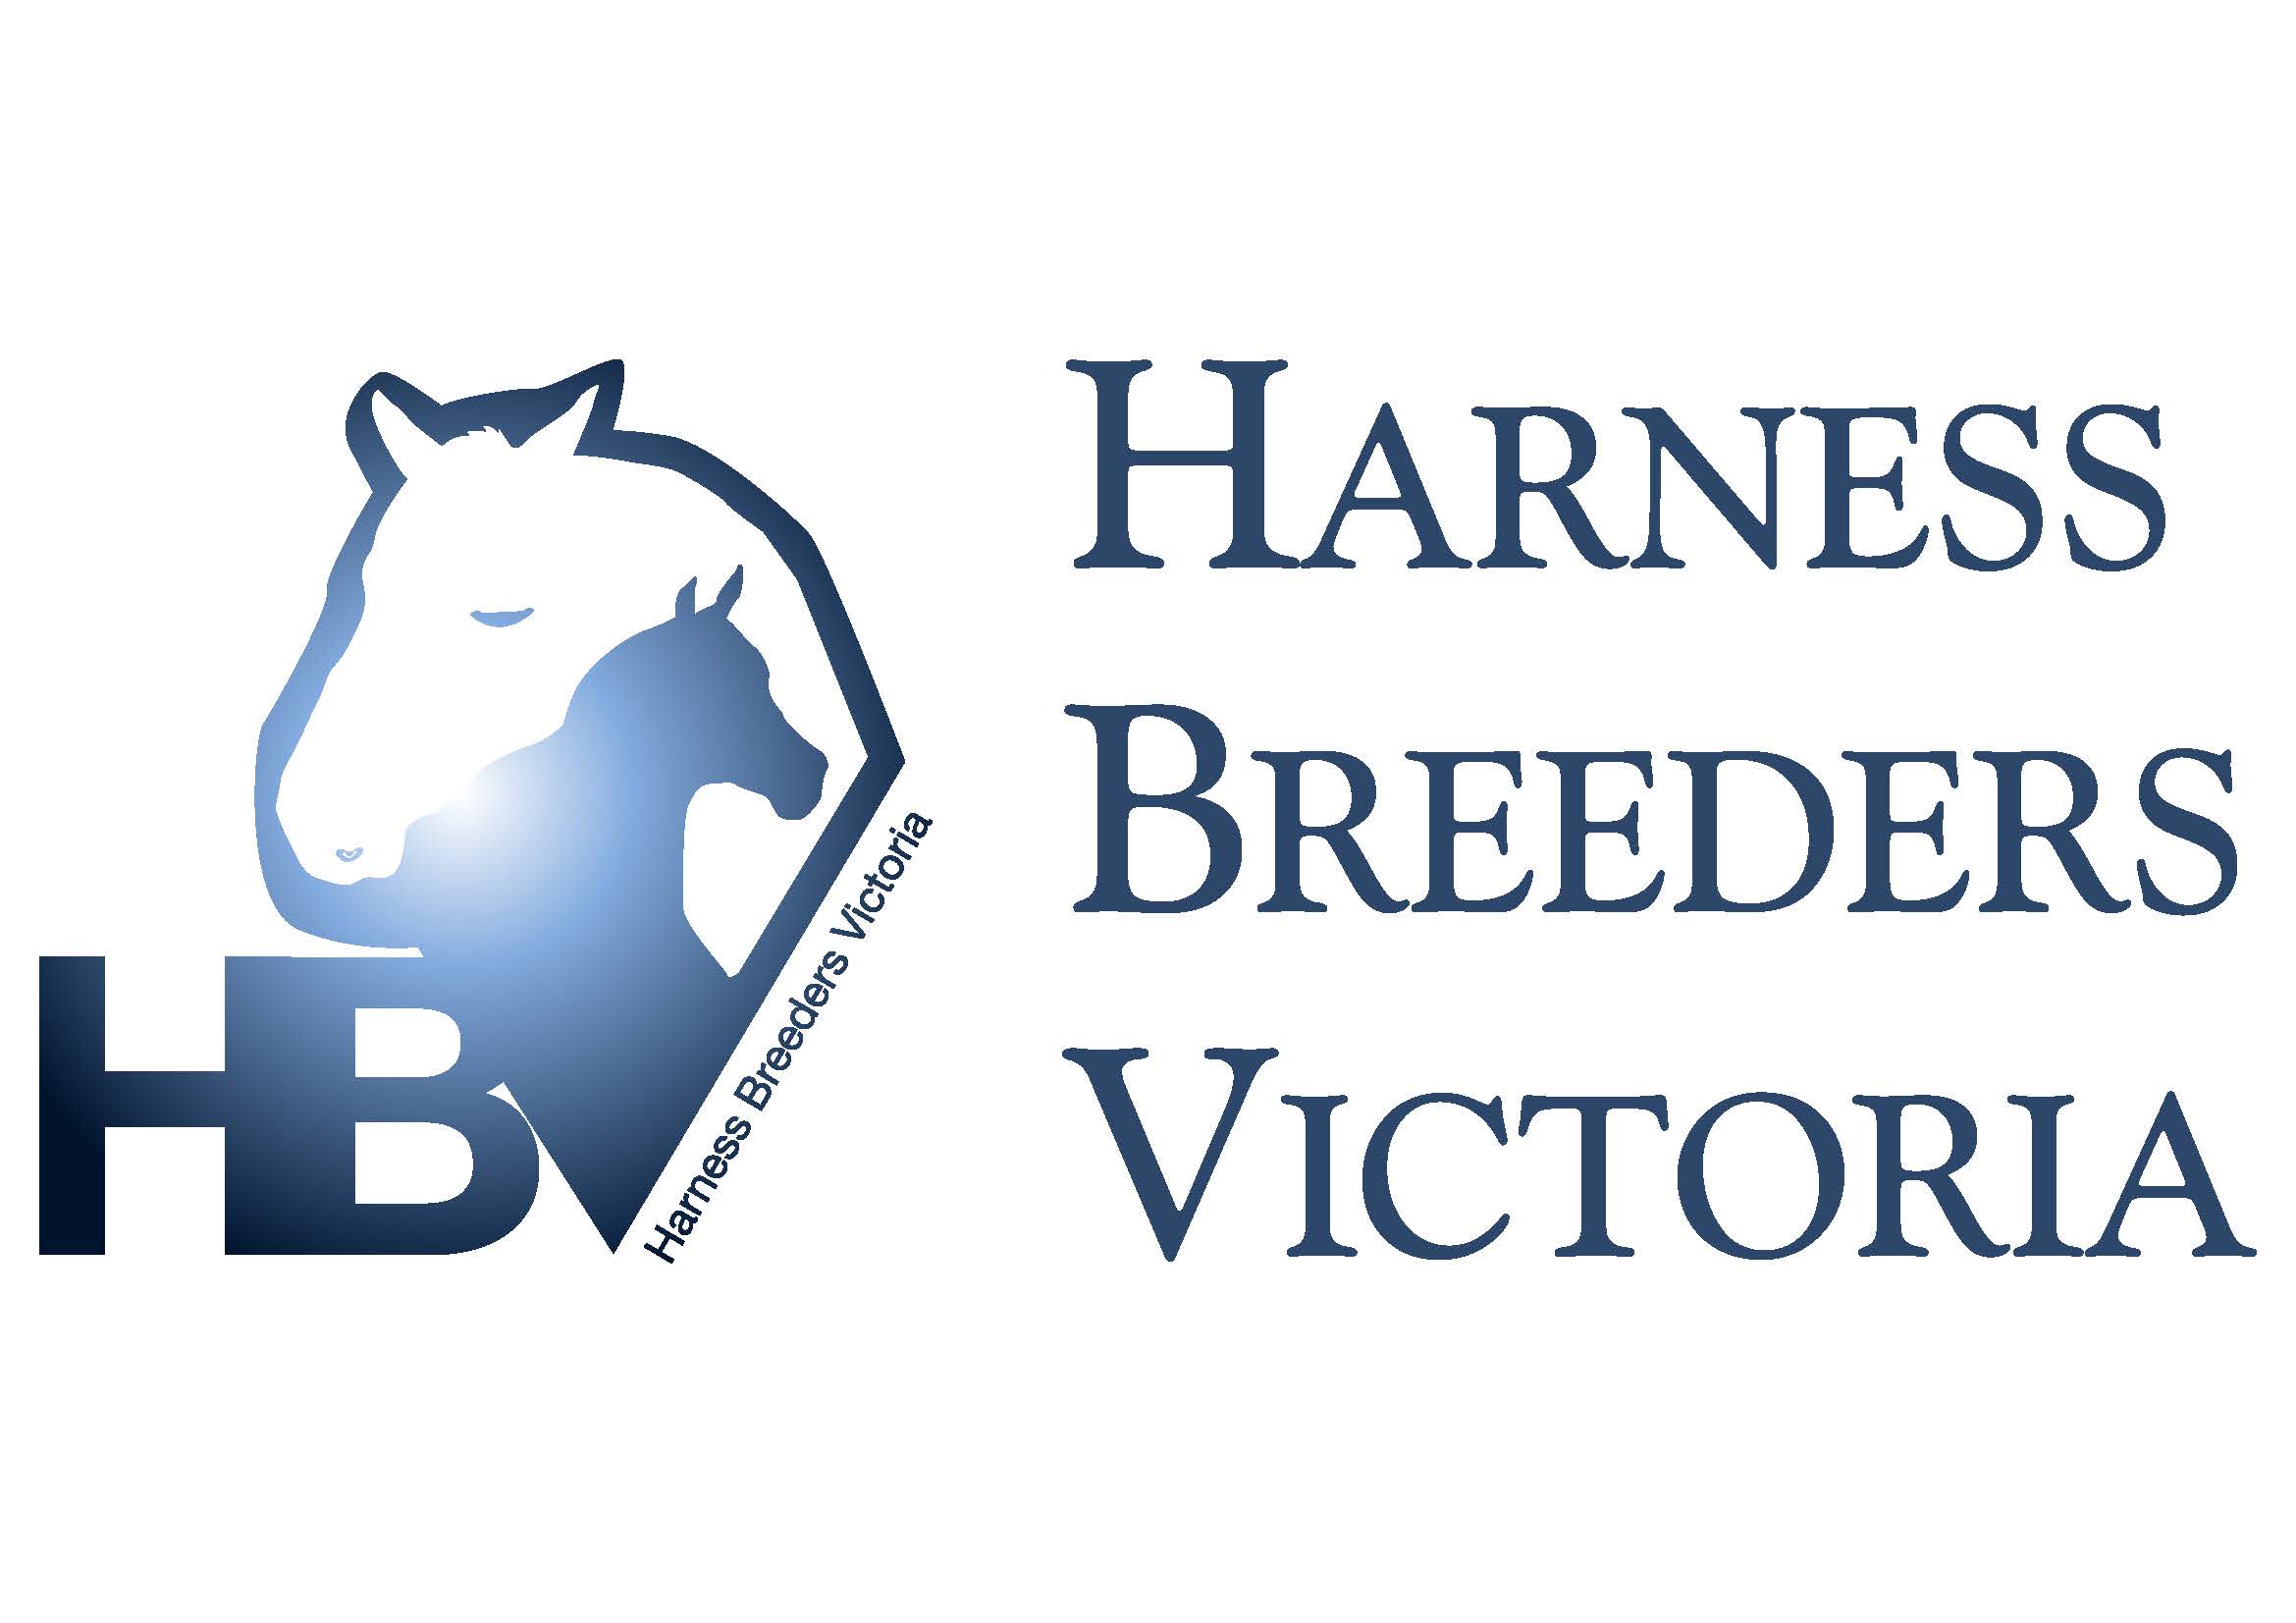 Harness Breeders Victoria